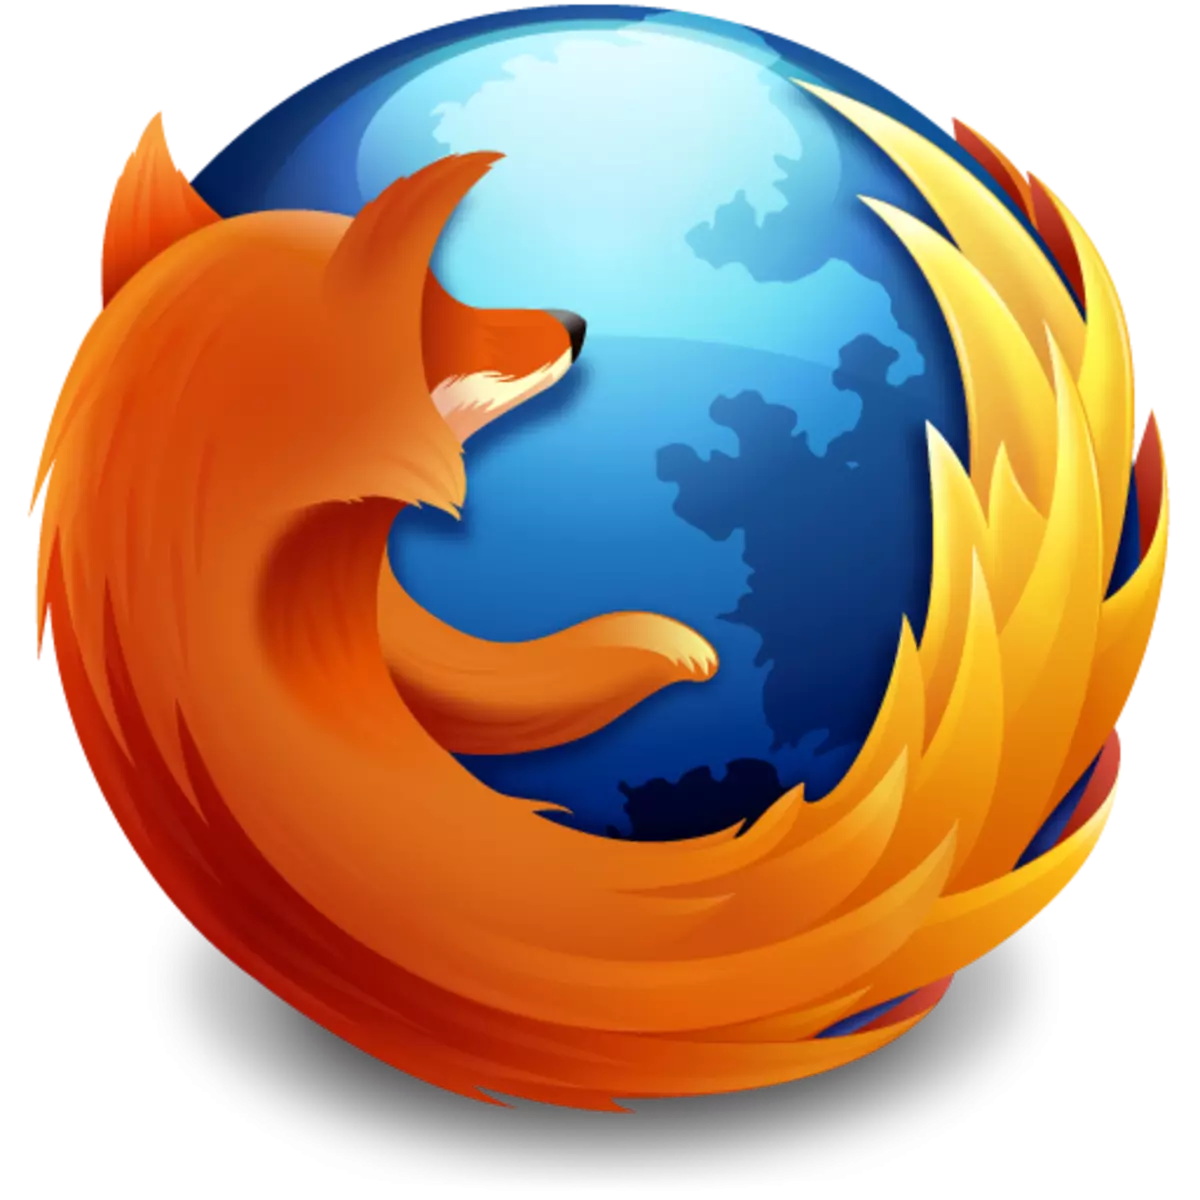 Yadda za a dawo da alamun alamun alamun abubuwa a cikin Firefox